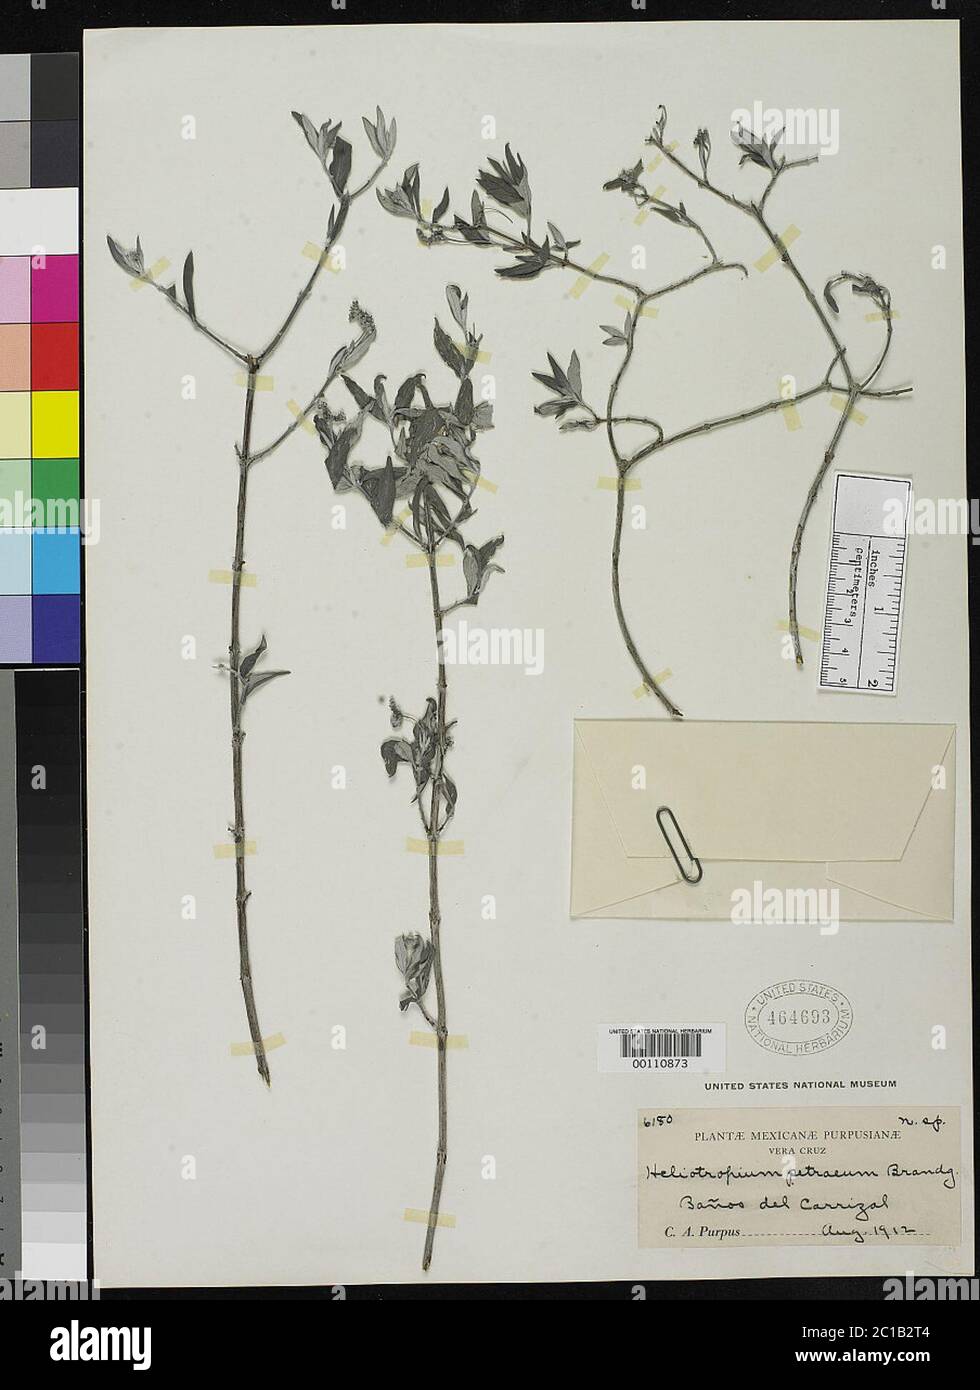 Heliotropium petraeum Brandegee Heliotropium petraeum Brandegee. Stock Photo